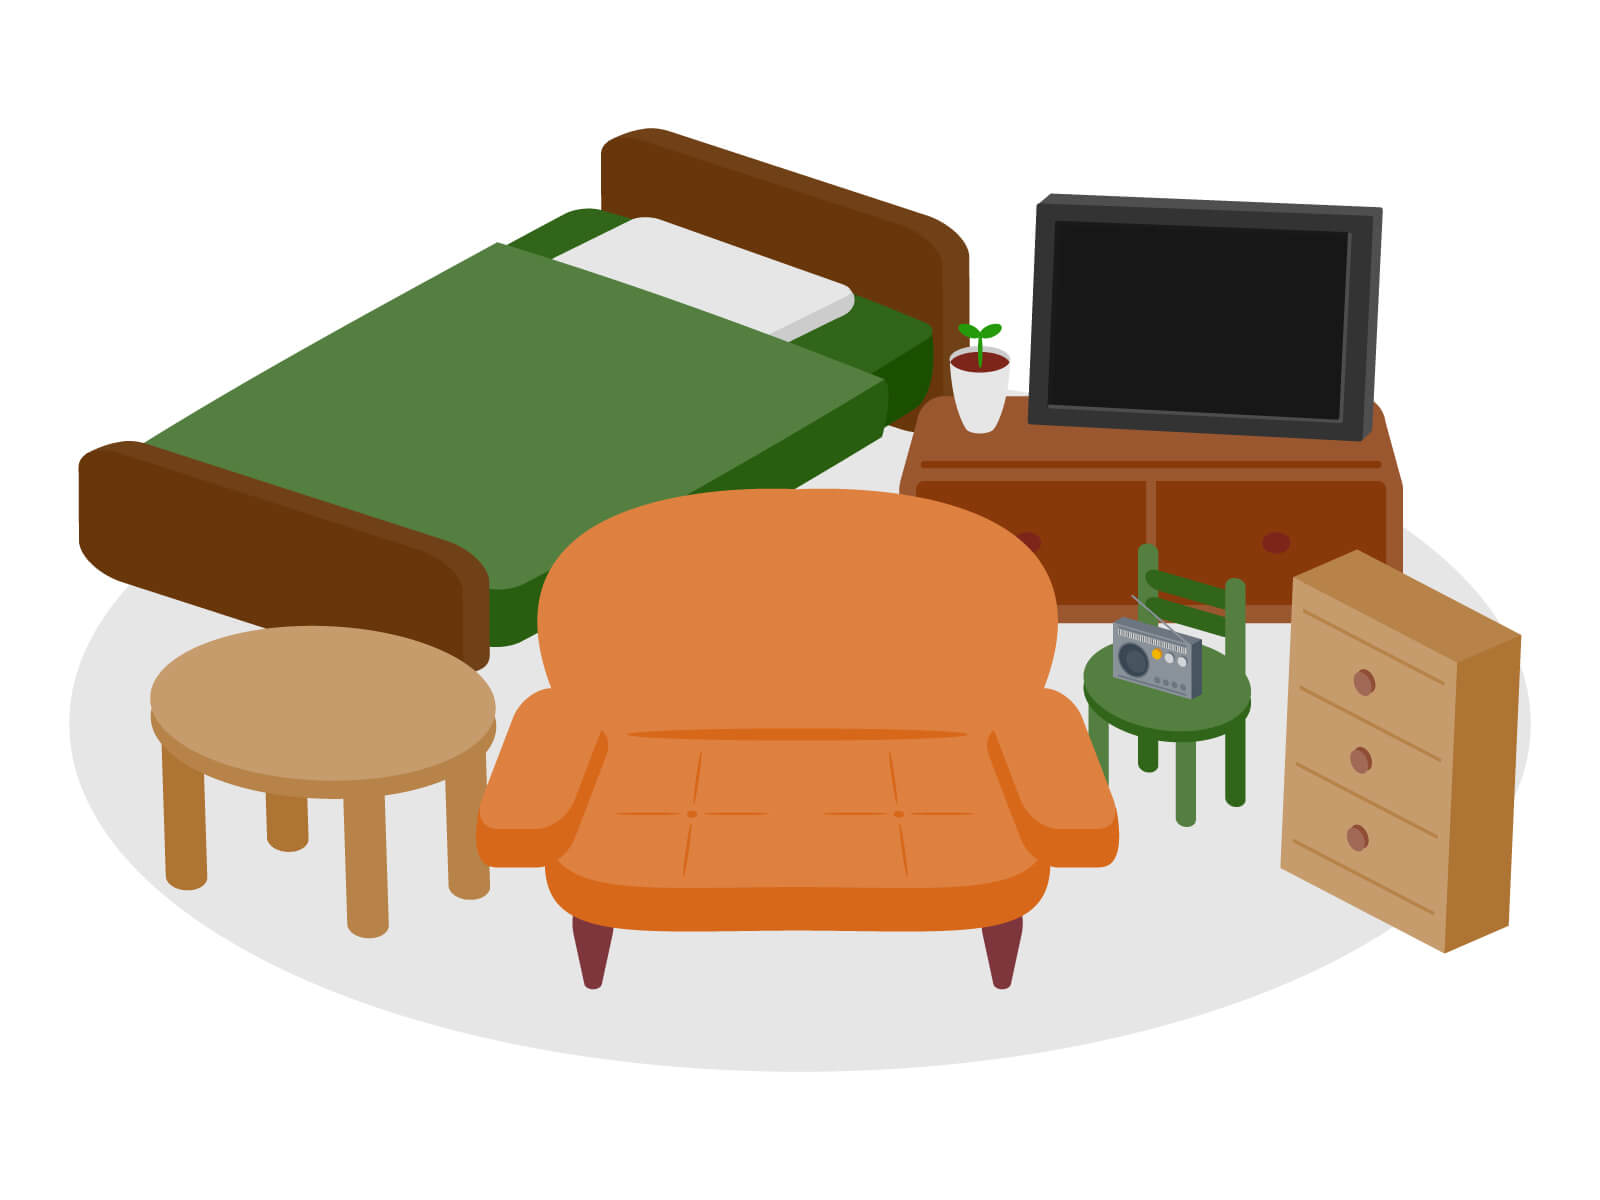 ソファやタンスなど生活に役立つ家具類のイラスト